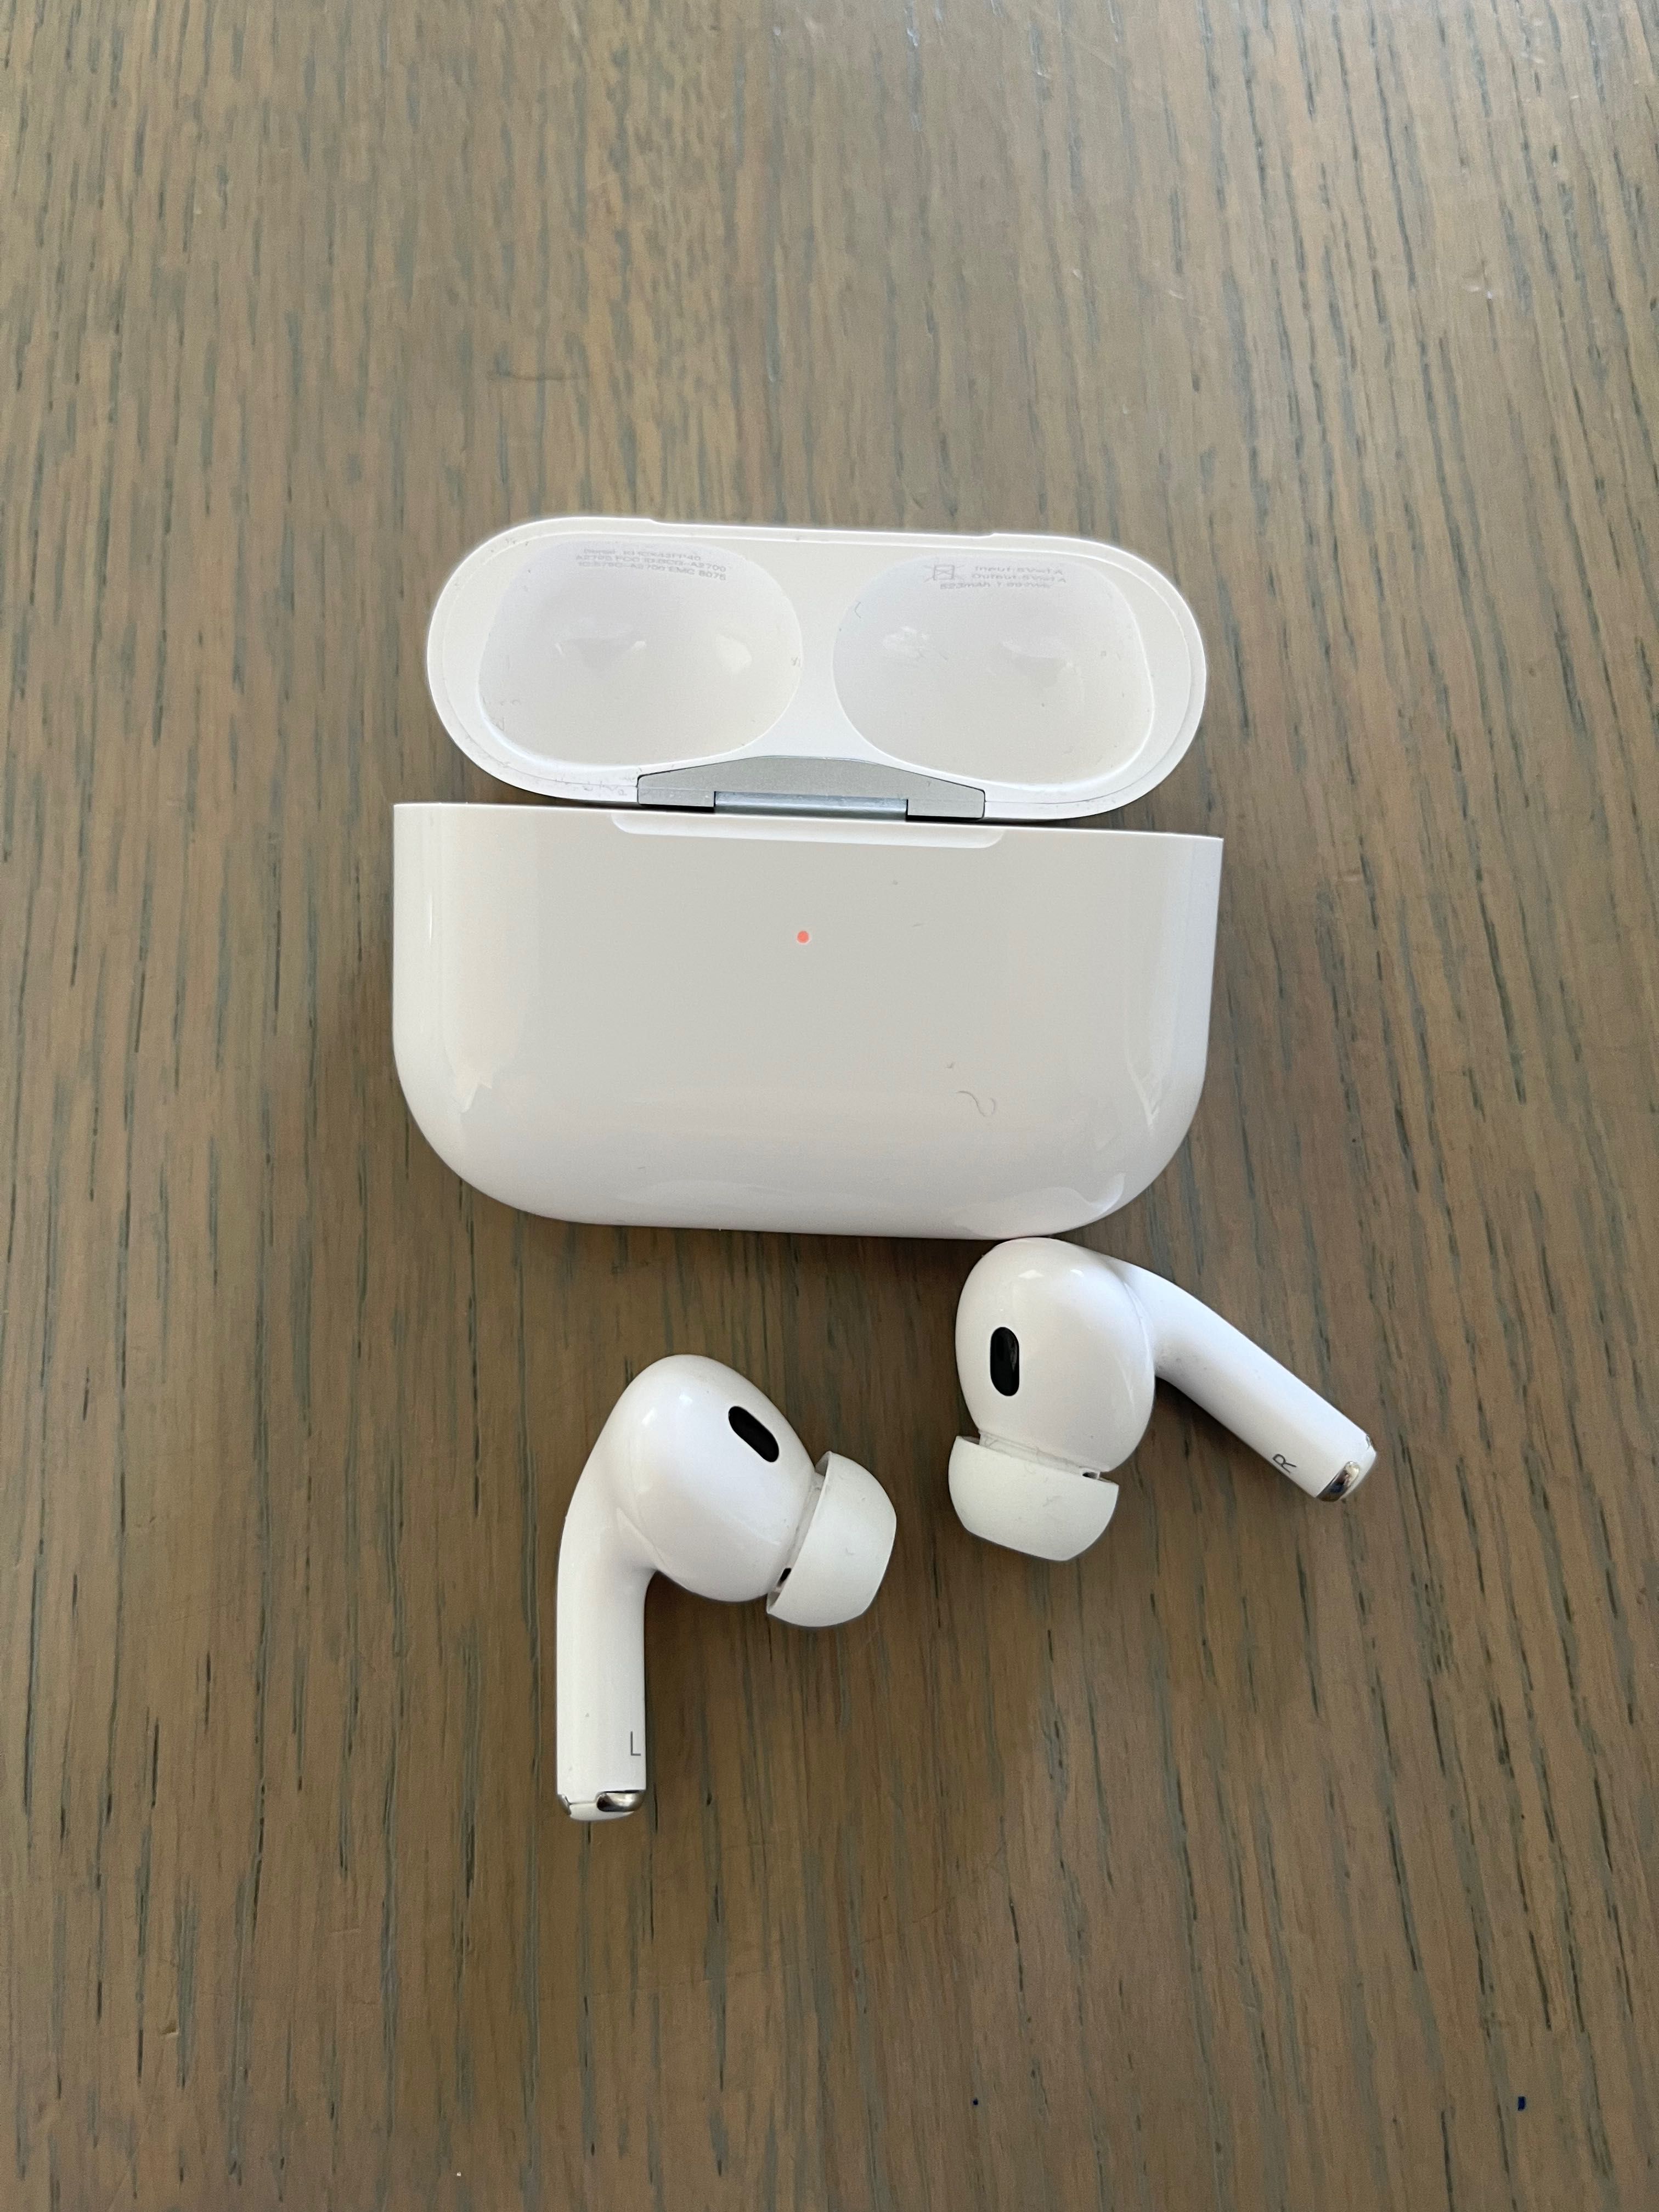 OKAZJA - słuchawki bezprzewodowe Apple Airpods!